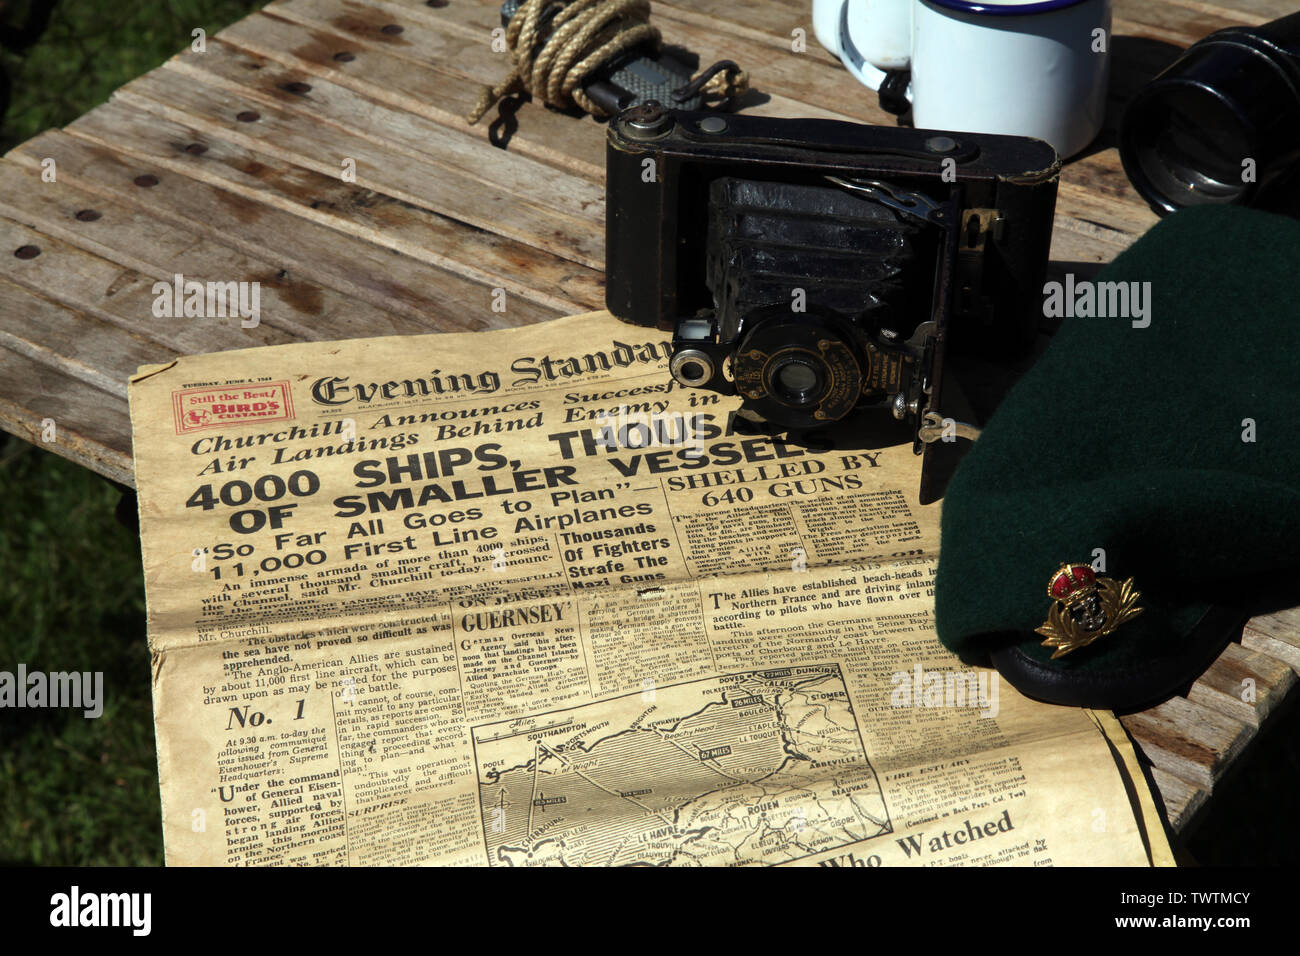 Standard du soir première page le 6 1944 juin, journal montrant l'annonce de Churchill sur le succès des atterrissages du jour J de la Seconde Guerre mondiale avec caméra et béret Banque D'Images